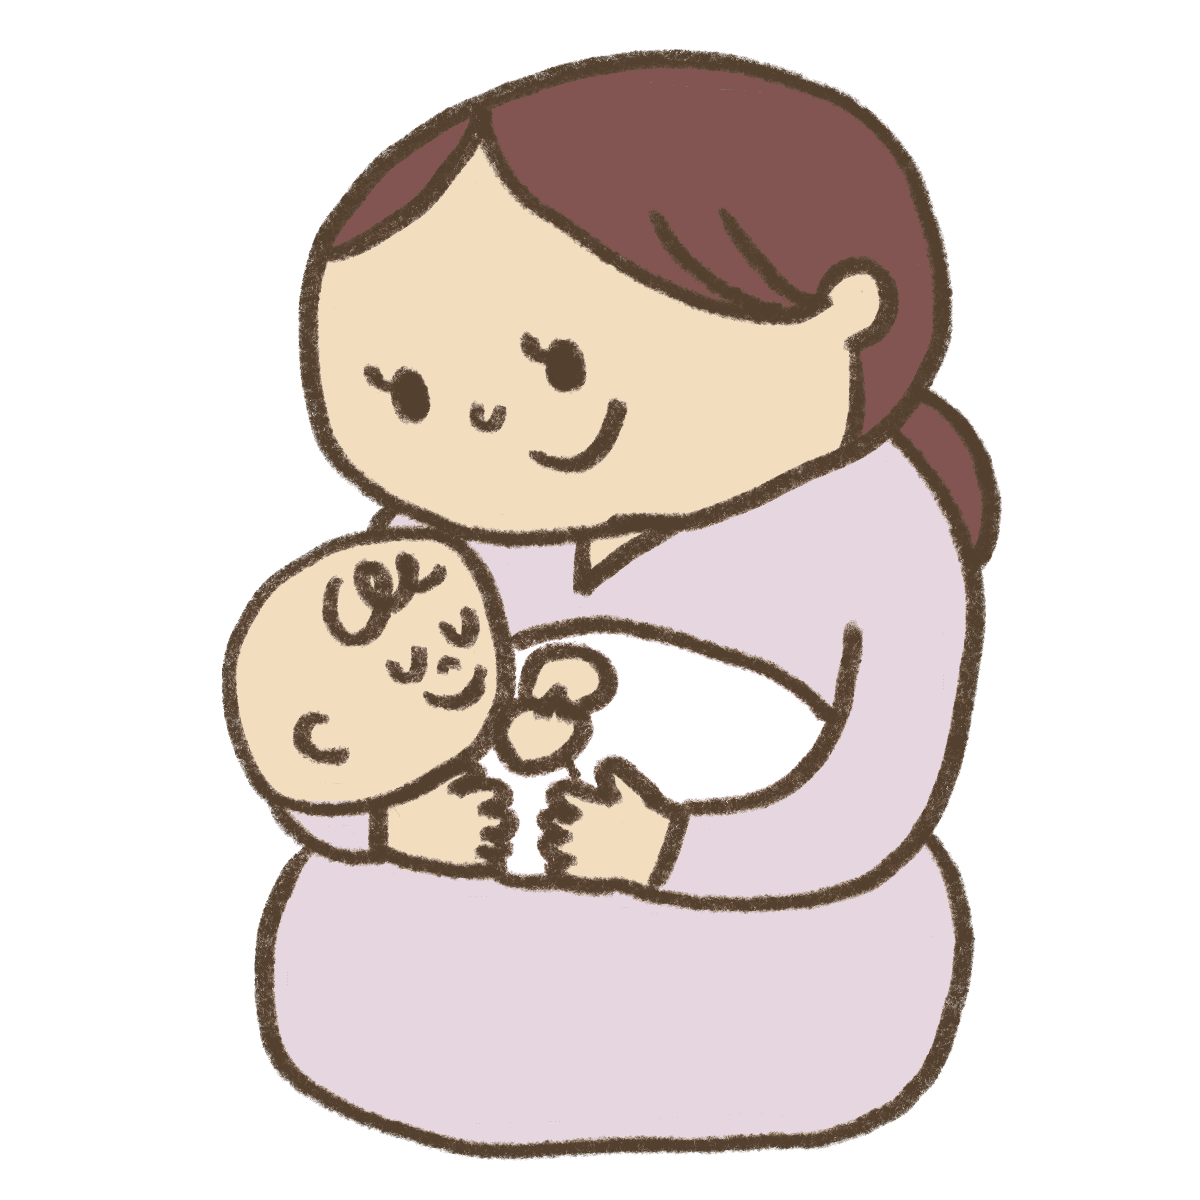 赤ちゃんを抱っこしているママの無料イラスト かわいいフリー素材屋 いらすと係